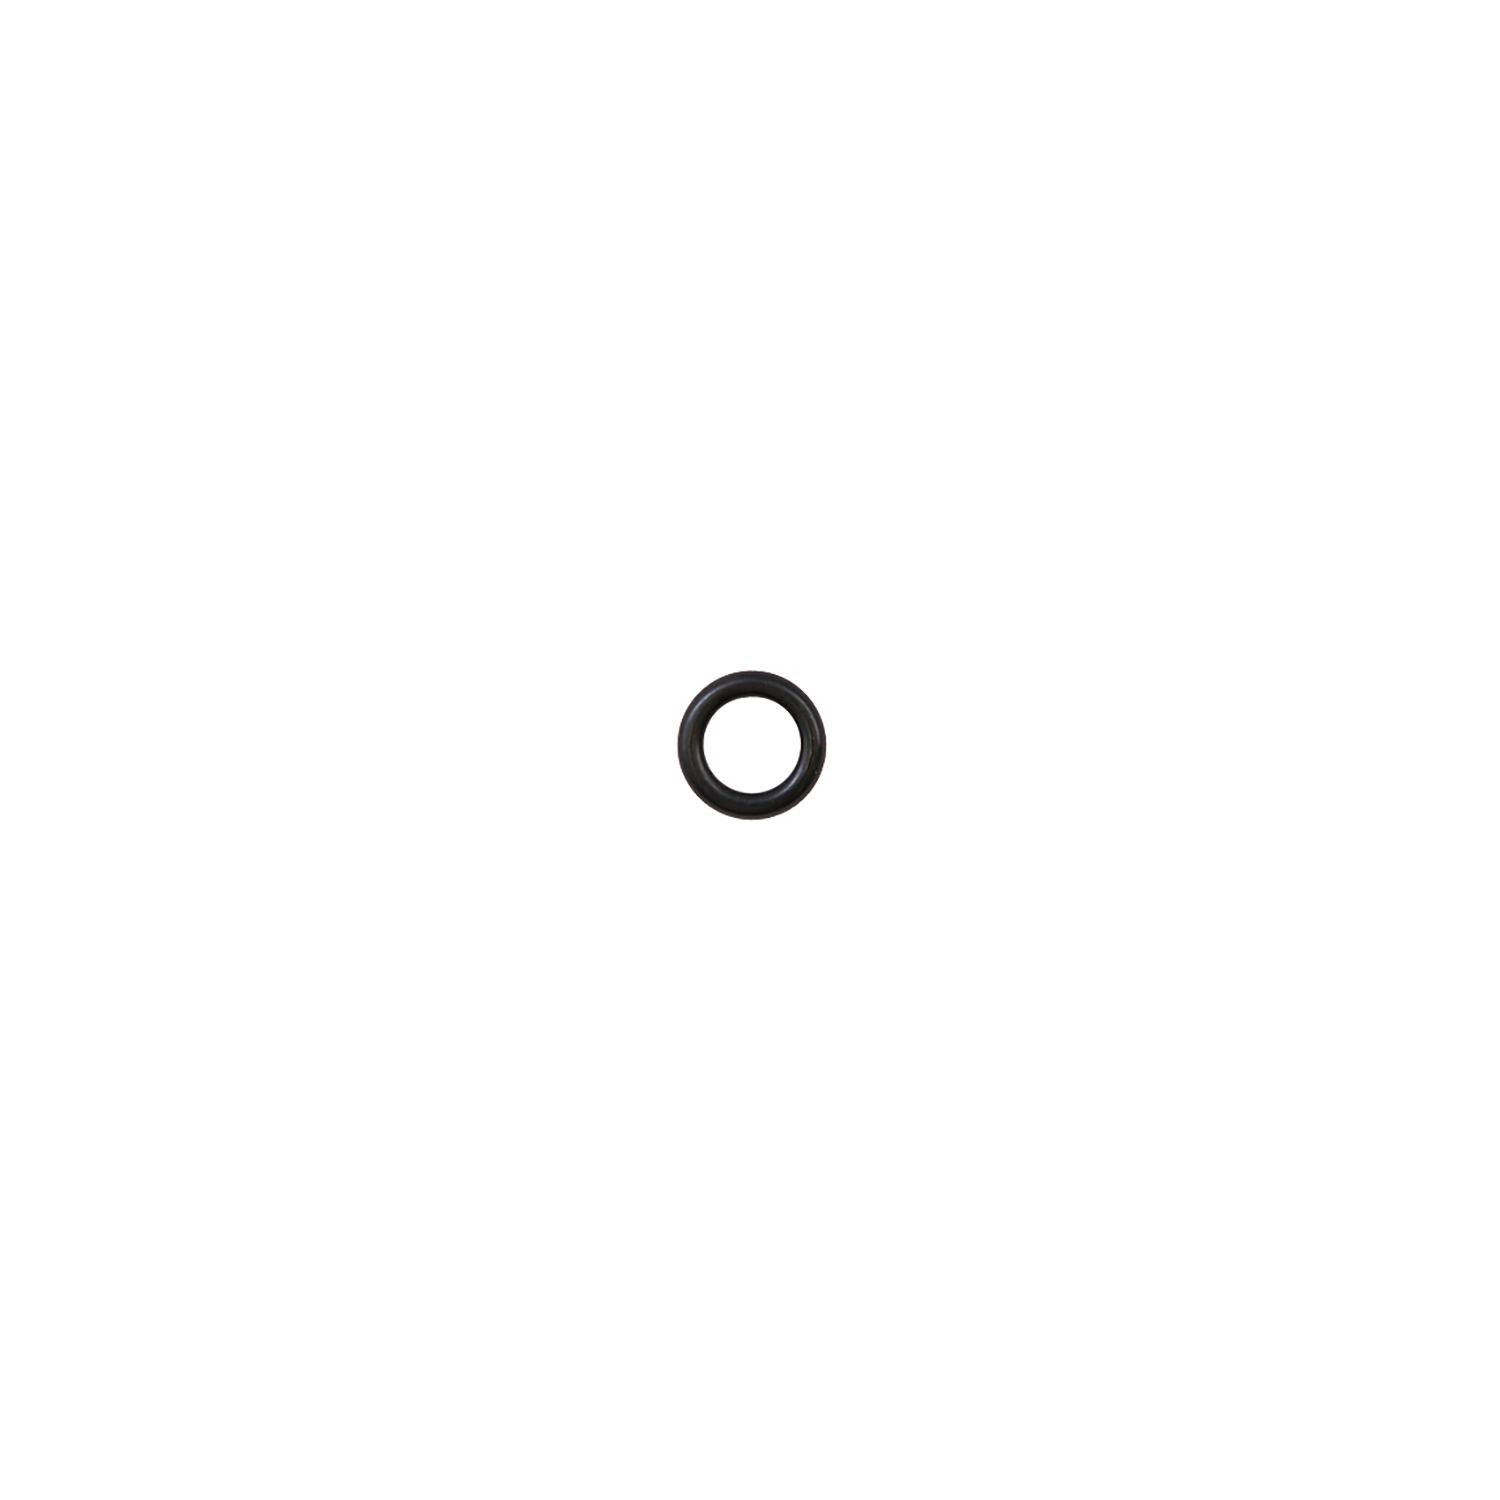 Кольцо уплотнительное 5*1,8 ( O-ring 5*1.8 ) RT-5565 поз.35